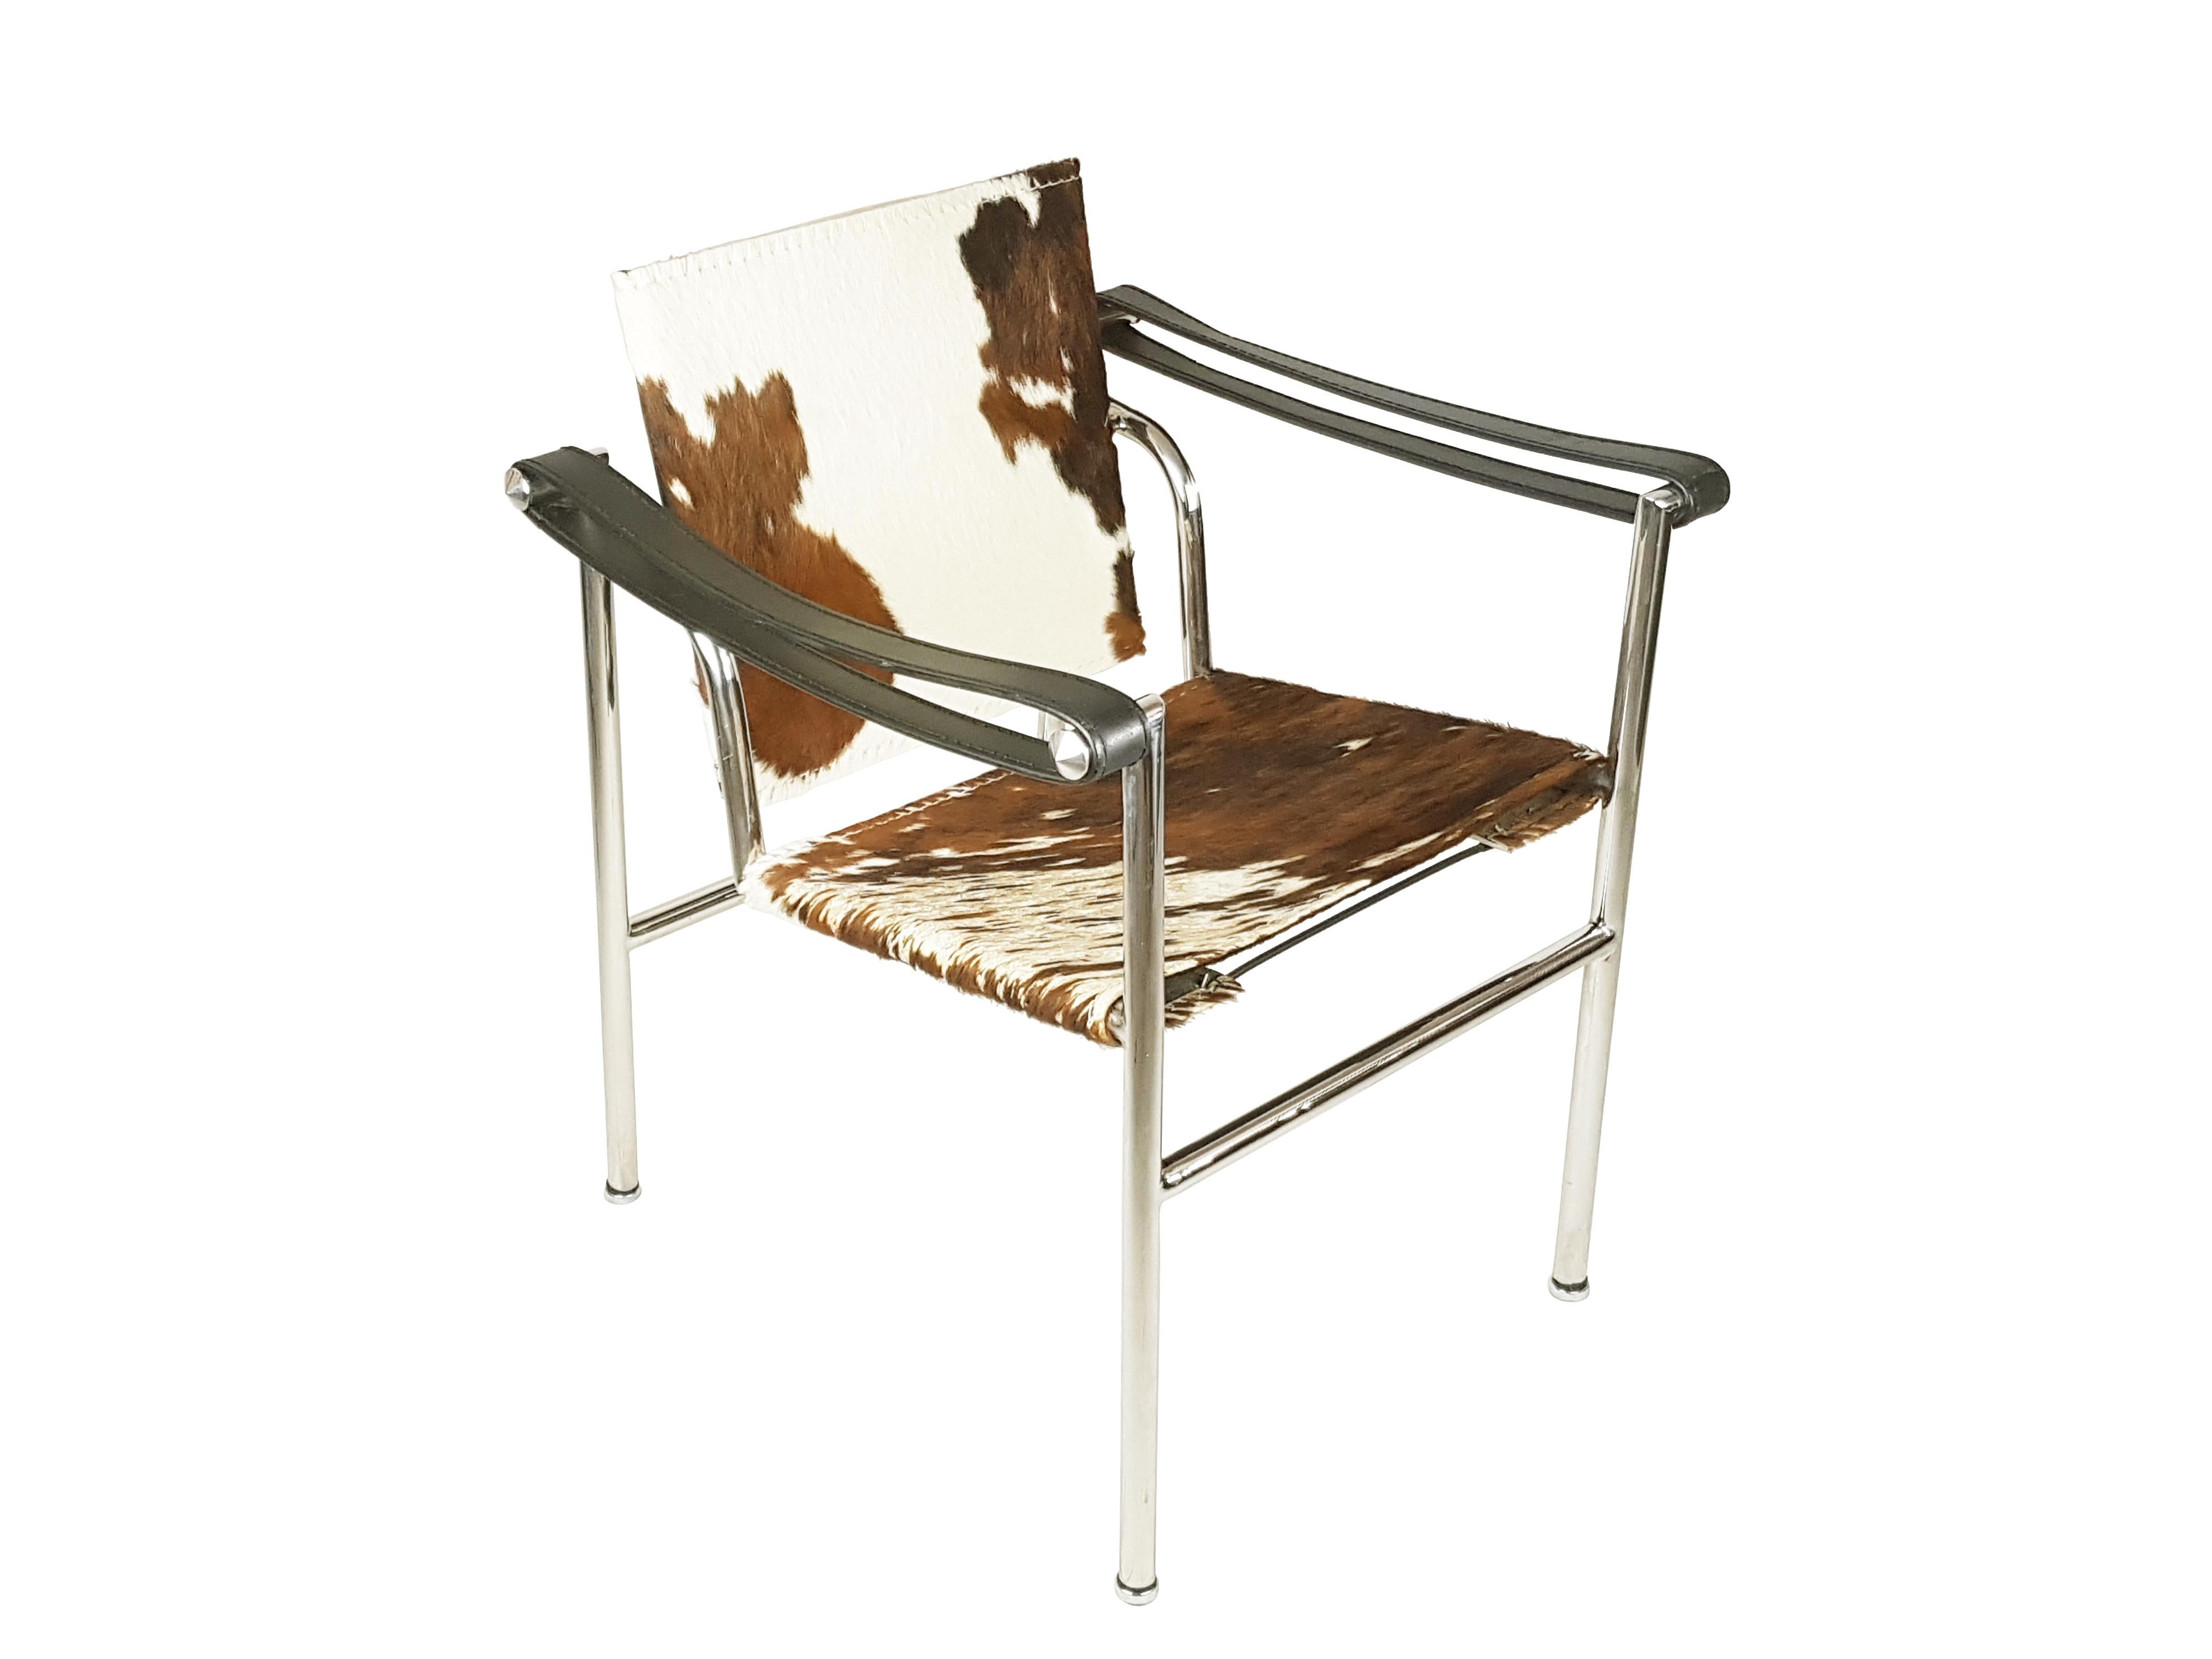 Fauteuil LC1 conçu par Le Corbusier en acier poli et métal chromé avec assise et dossier en cuir vachette/poney. Ce fauteuil a été produit entre les années 60 et 70. Bien qu'il ne comporte ni signature ni numéro de série, il a été fabriqué avec une